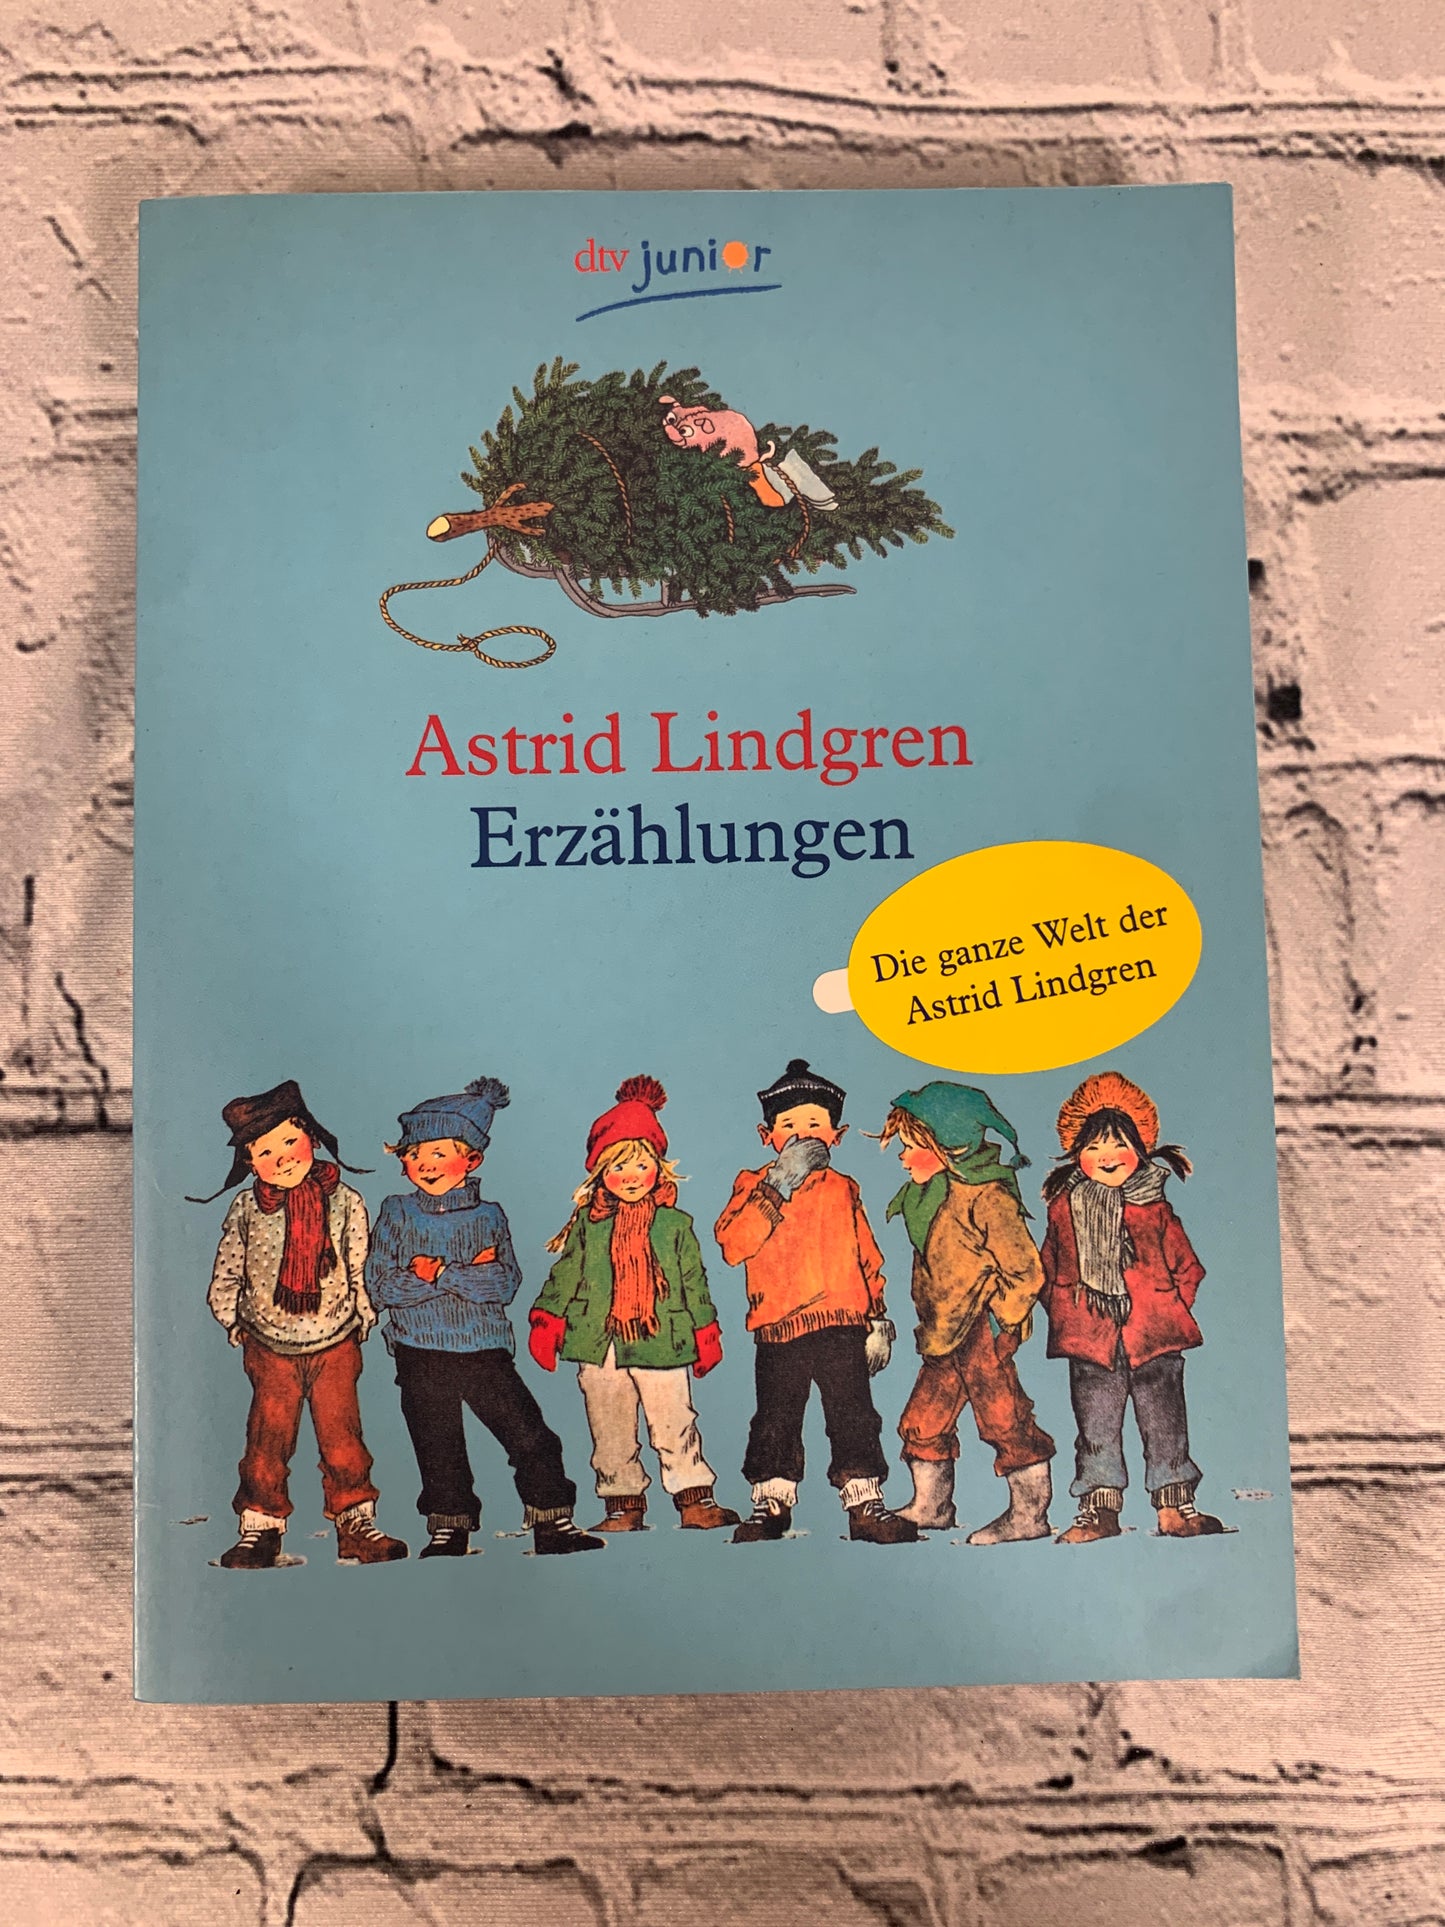 Erzahlungen (Stories) by Astrid Lindgren [2003 · German]